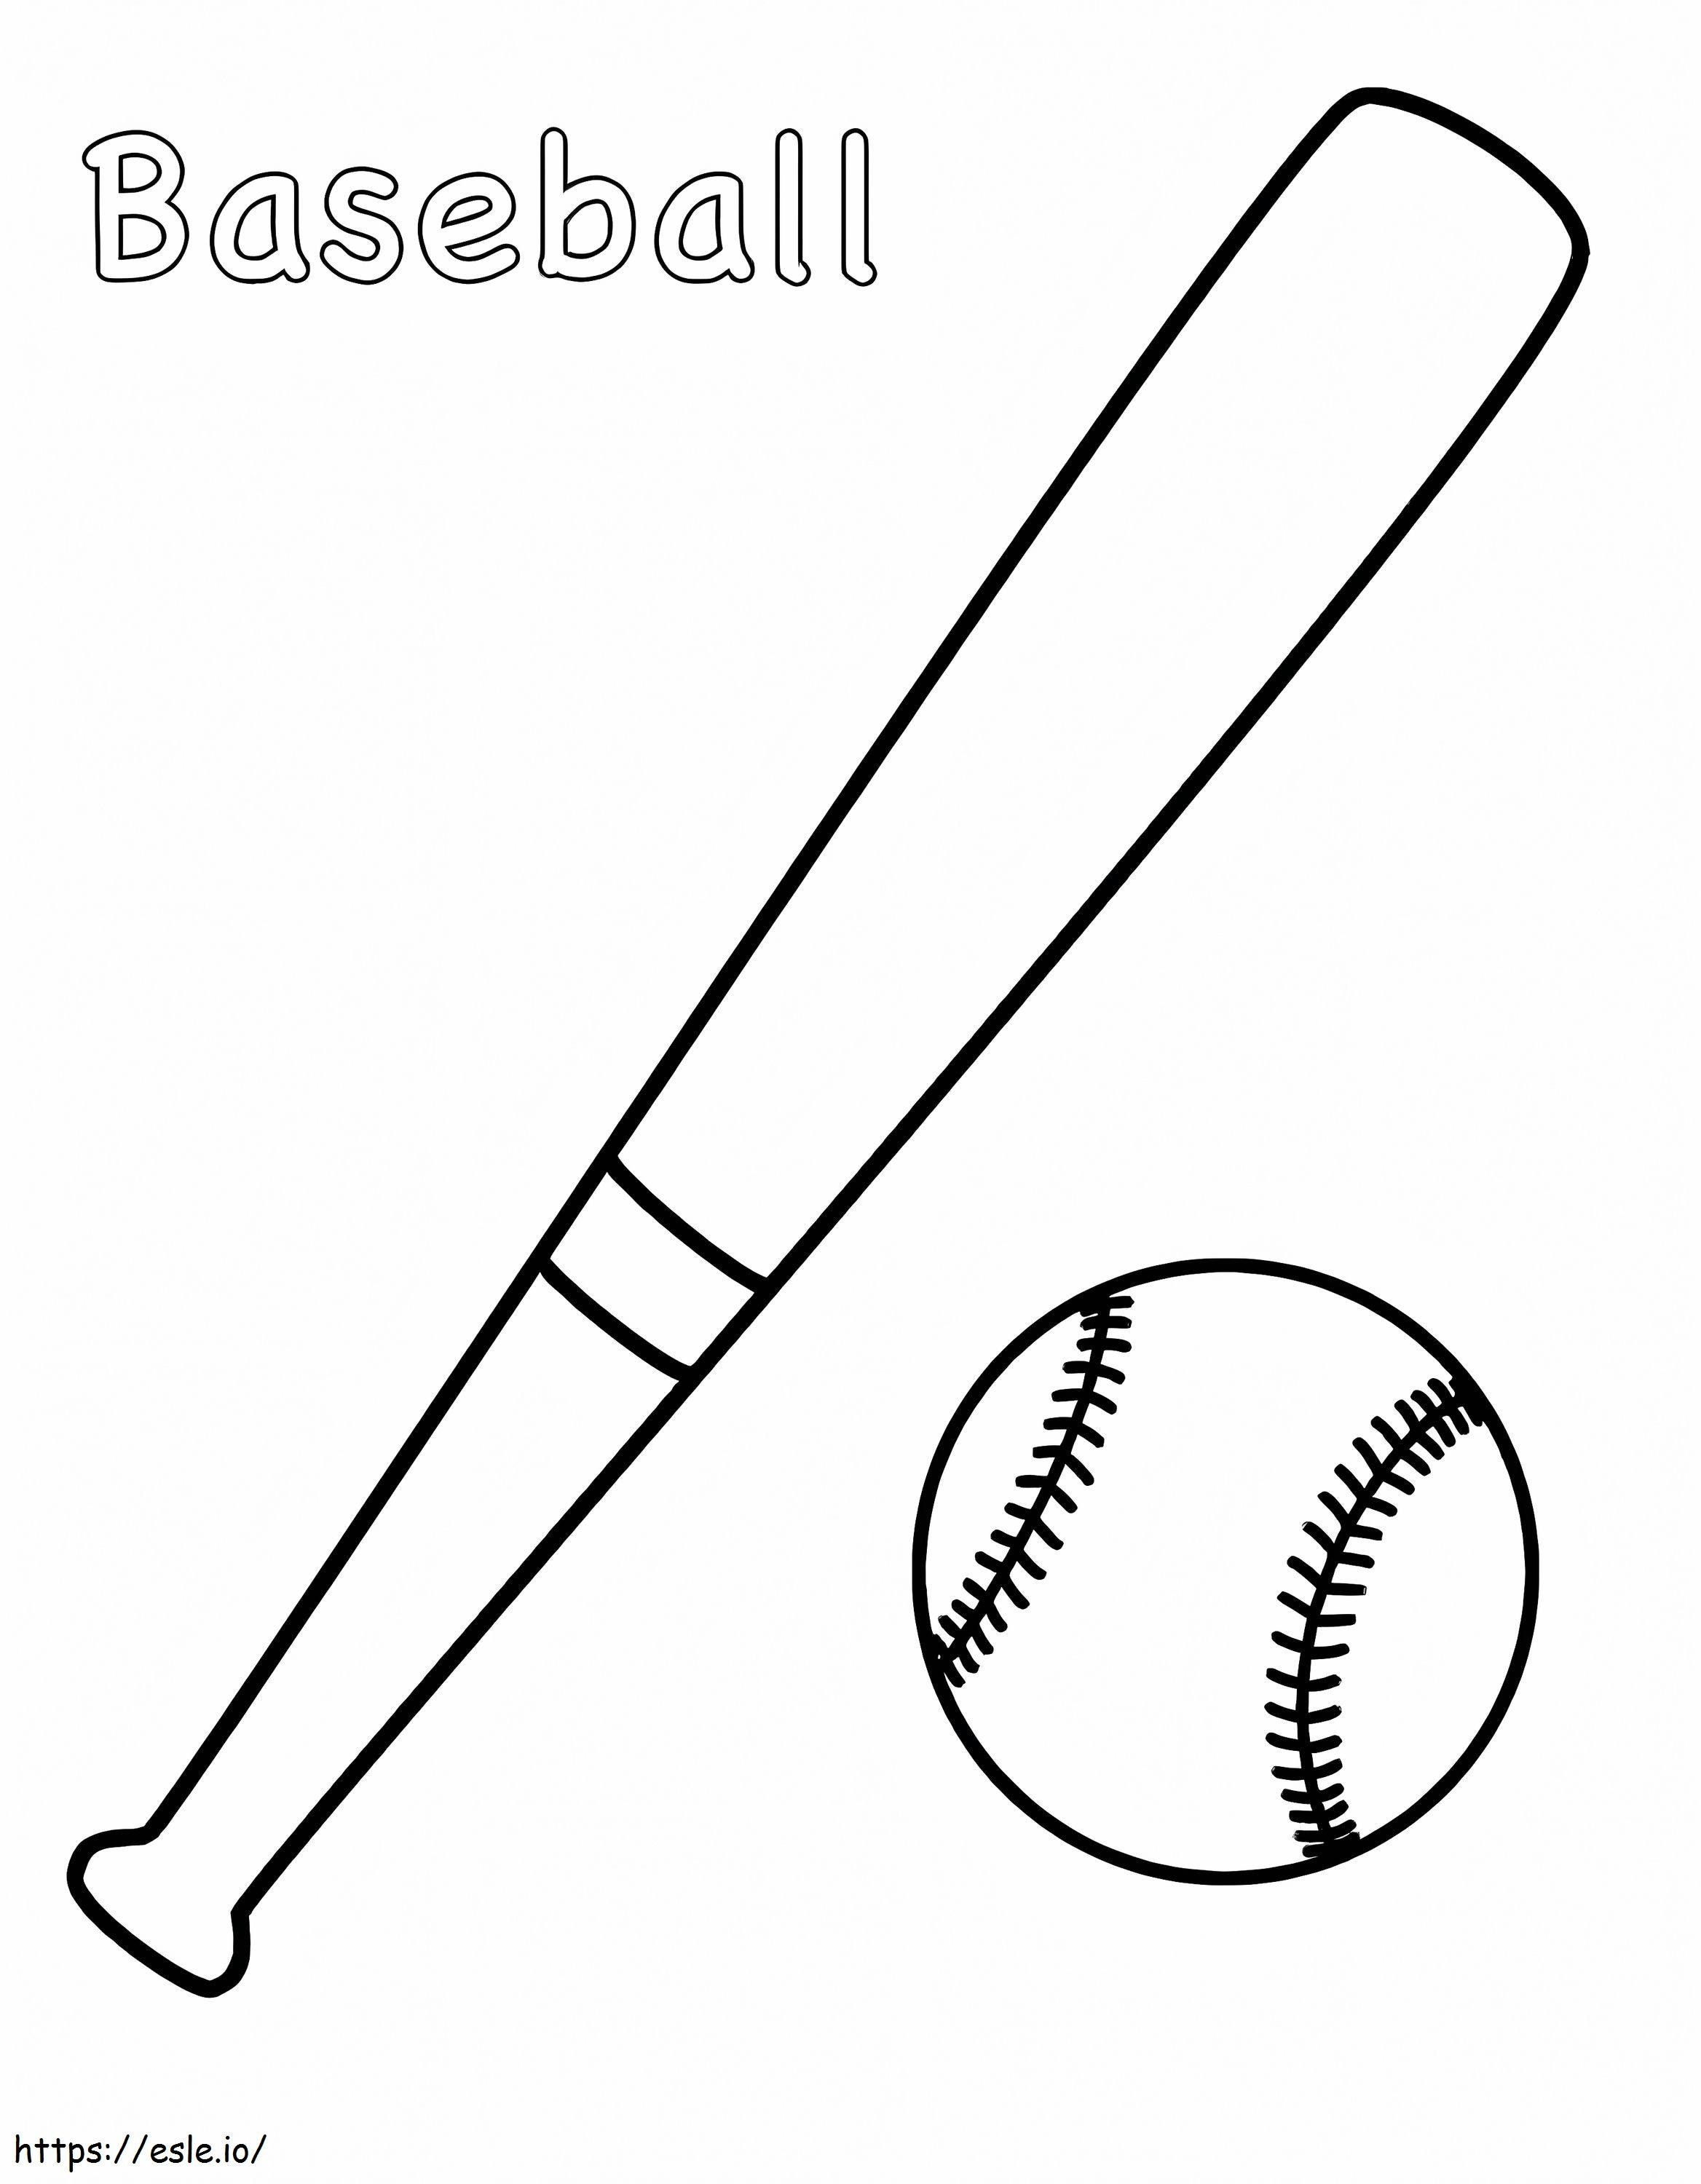 Baseball Bat And Ball coloring page